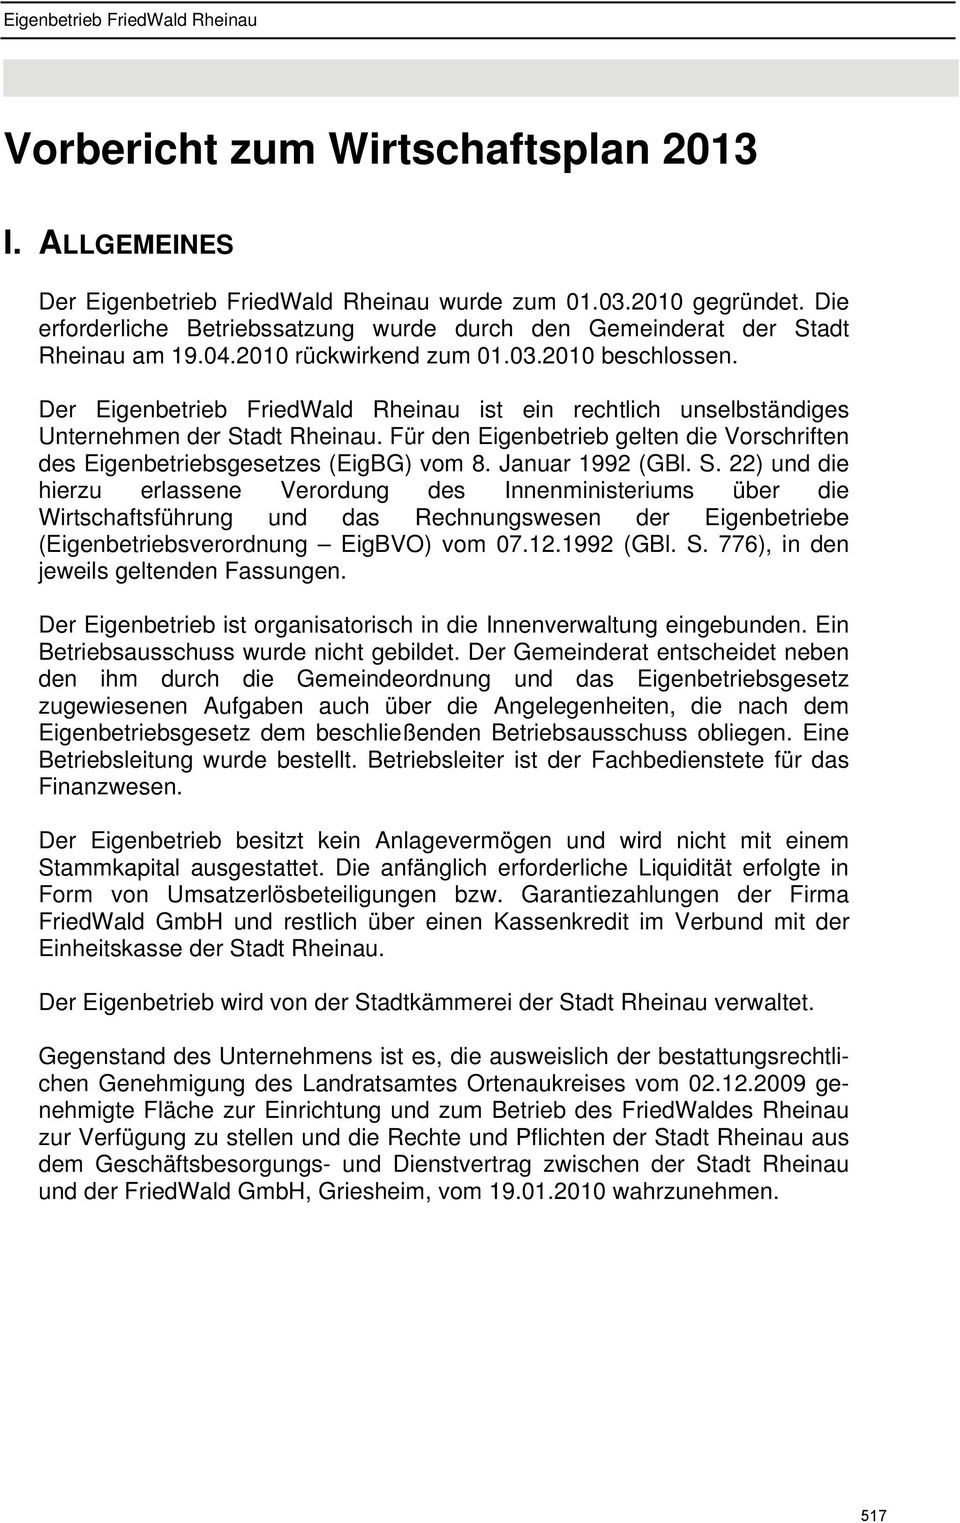 Der Eigenbetrieb FriedWald Rheinau ist ein rechtlich unselbständiges Unternehmen der Stadt Rheinau. Für den Eigenbetrieb gelten die Vorschriften des Eigenbetriebsgesetzes (EigBG) vom 8.